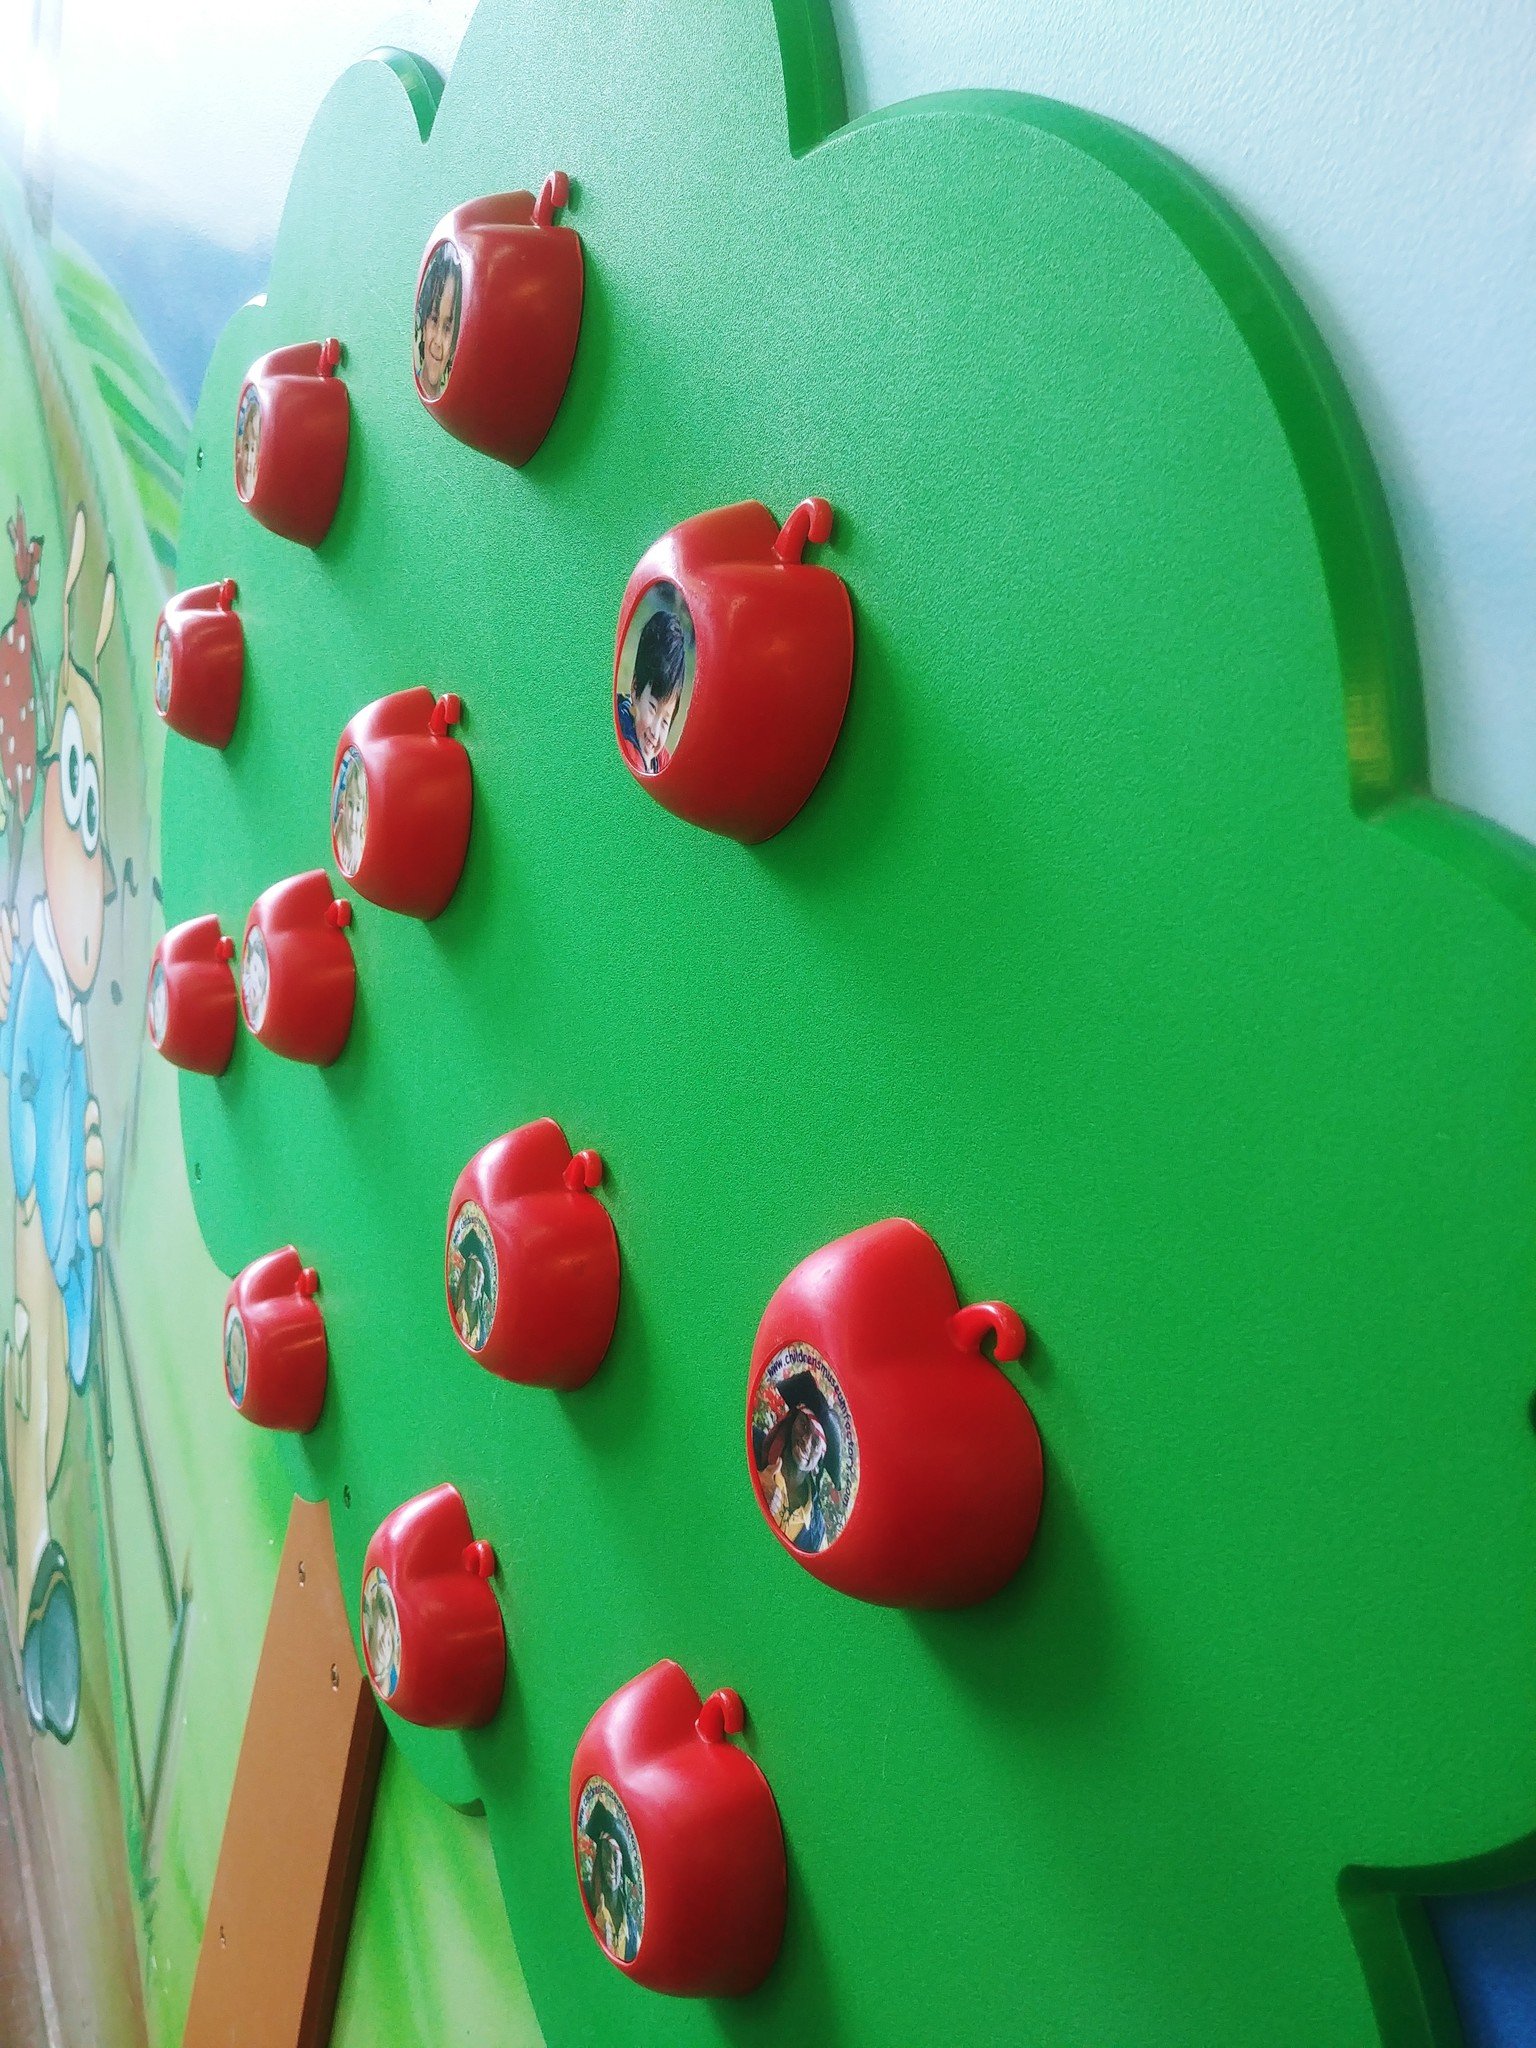 Children's Museum Factory Pommes magnétiques personnalisables supplémentaires pour le pommier magnétique.